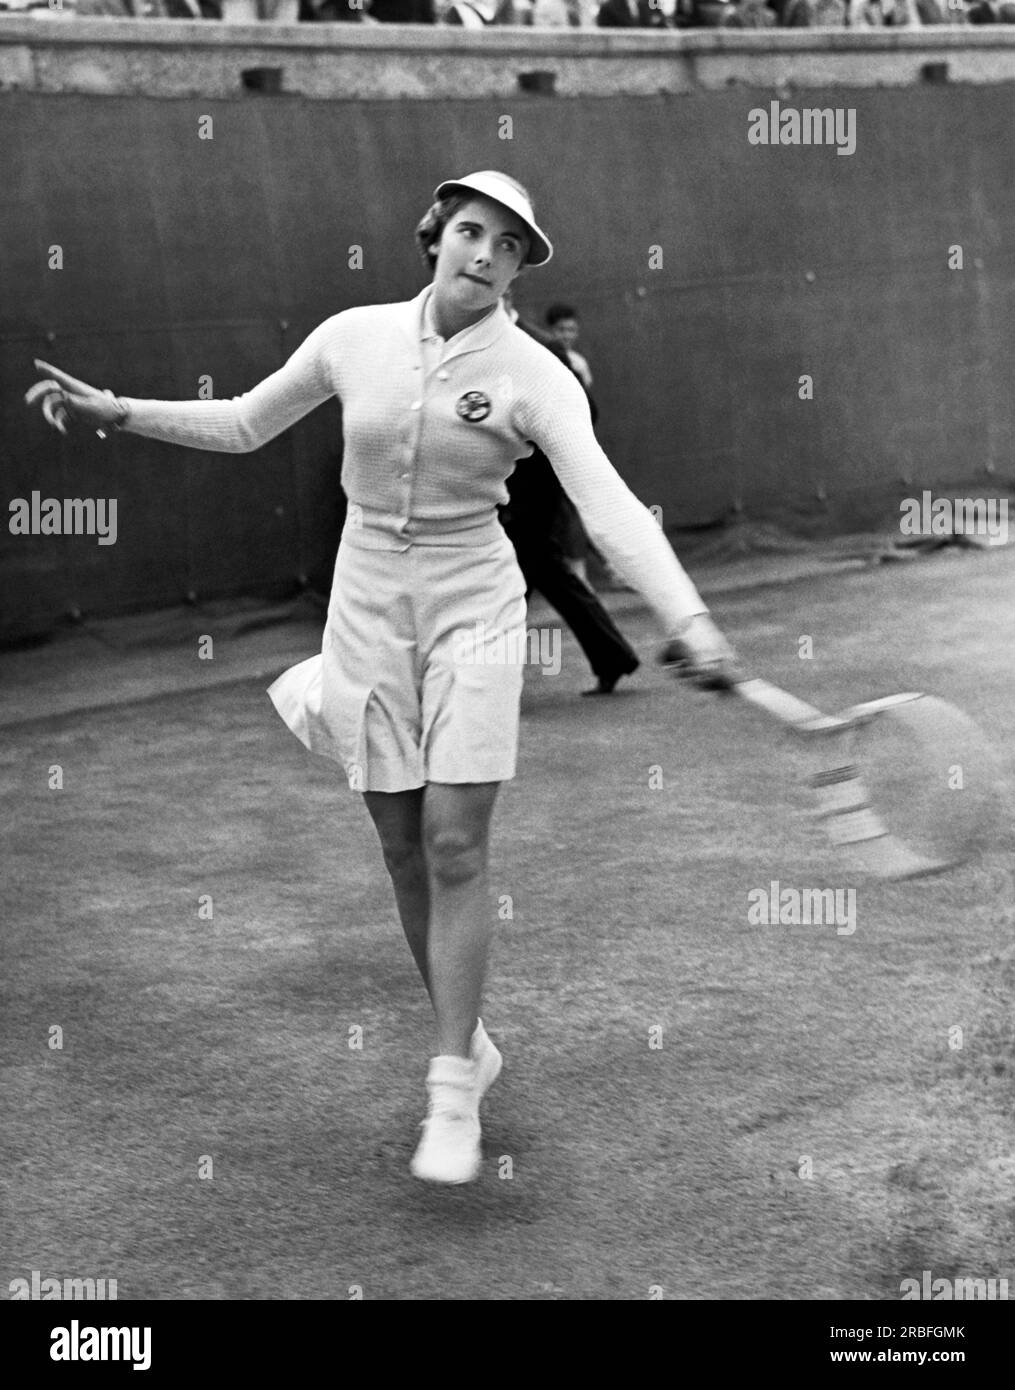 Forest Hills, New York : 7 septembre 1936 la star de tennis britannique Katherine Stammers frappe un revers dans un match pendant les championnats nationaux de tennis simples qui se déroulent au West Side Club. Banque D'Images